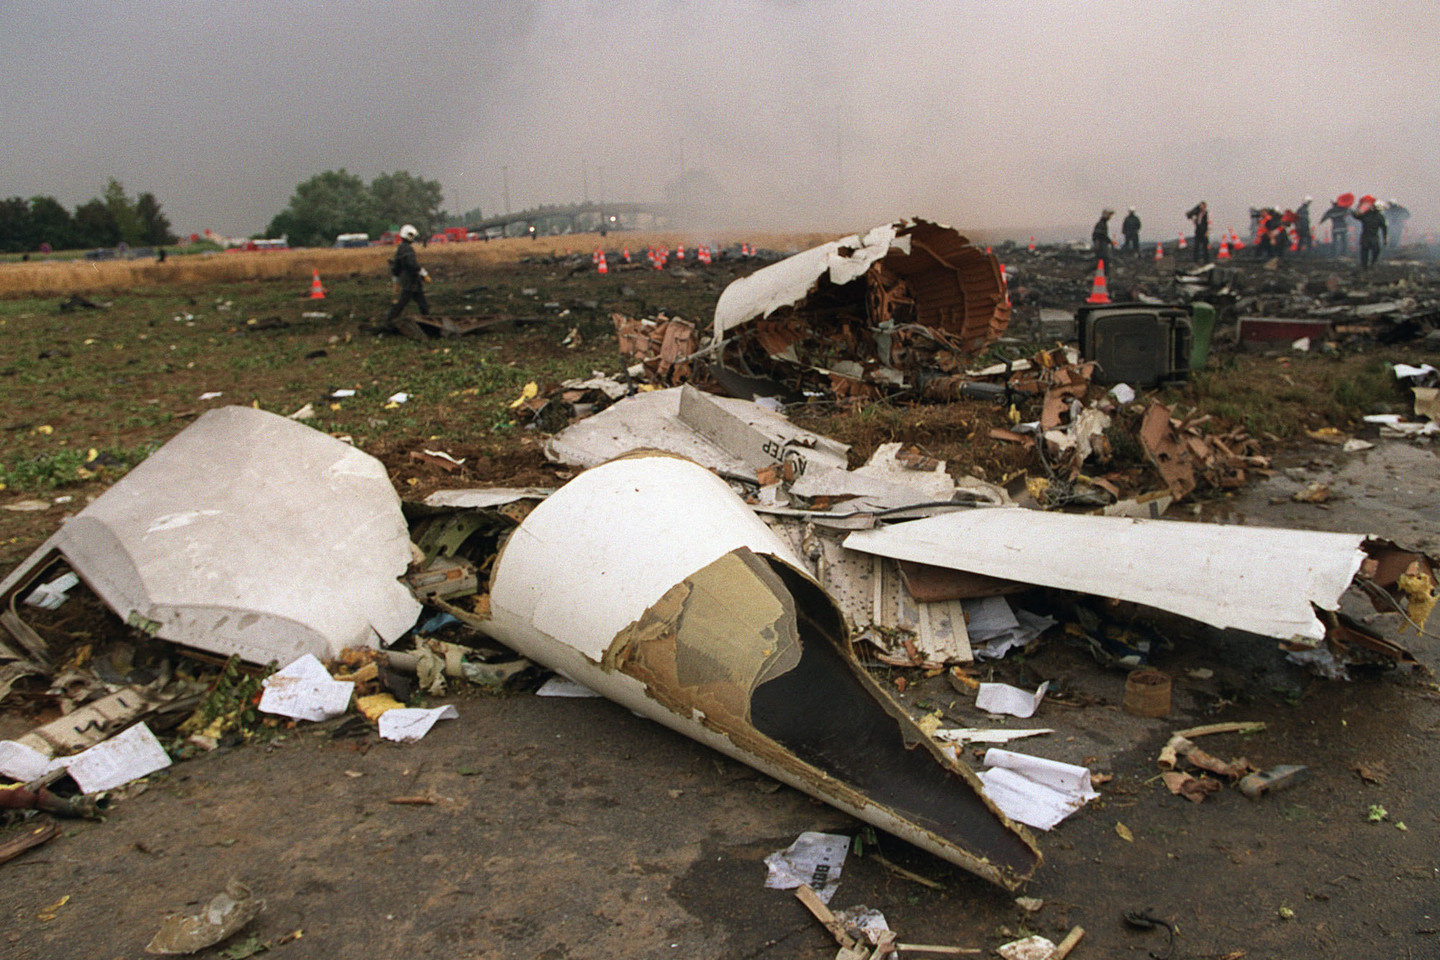  2000-aisiais, pražudydamas 113 žmonių, „Concorde“ sudužo greta Paryžiaus.<br> AFP/Scanpix nuotr.